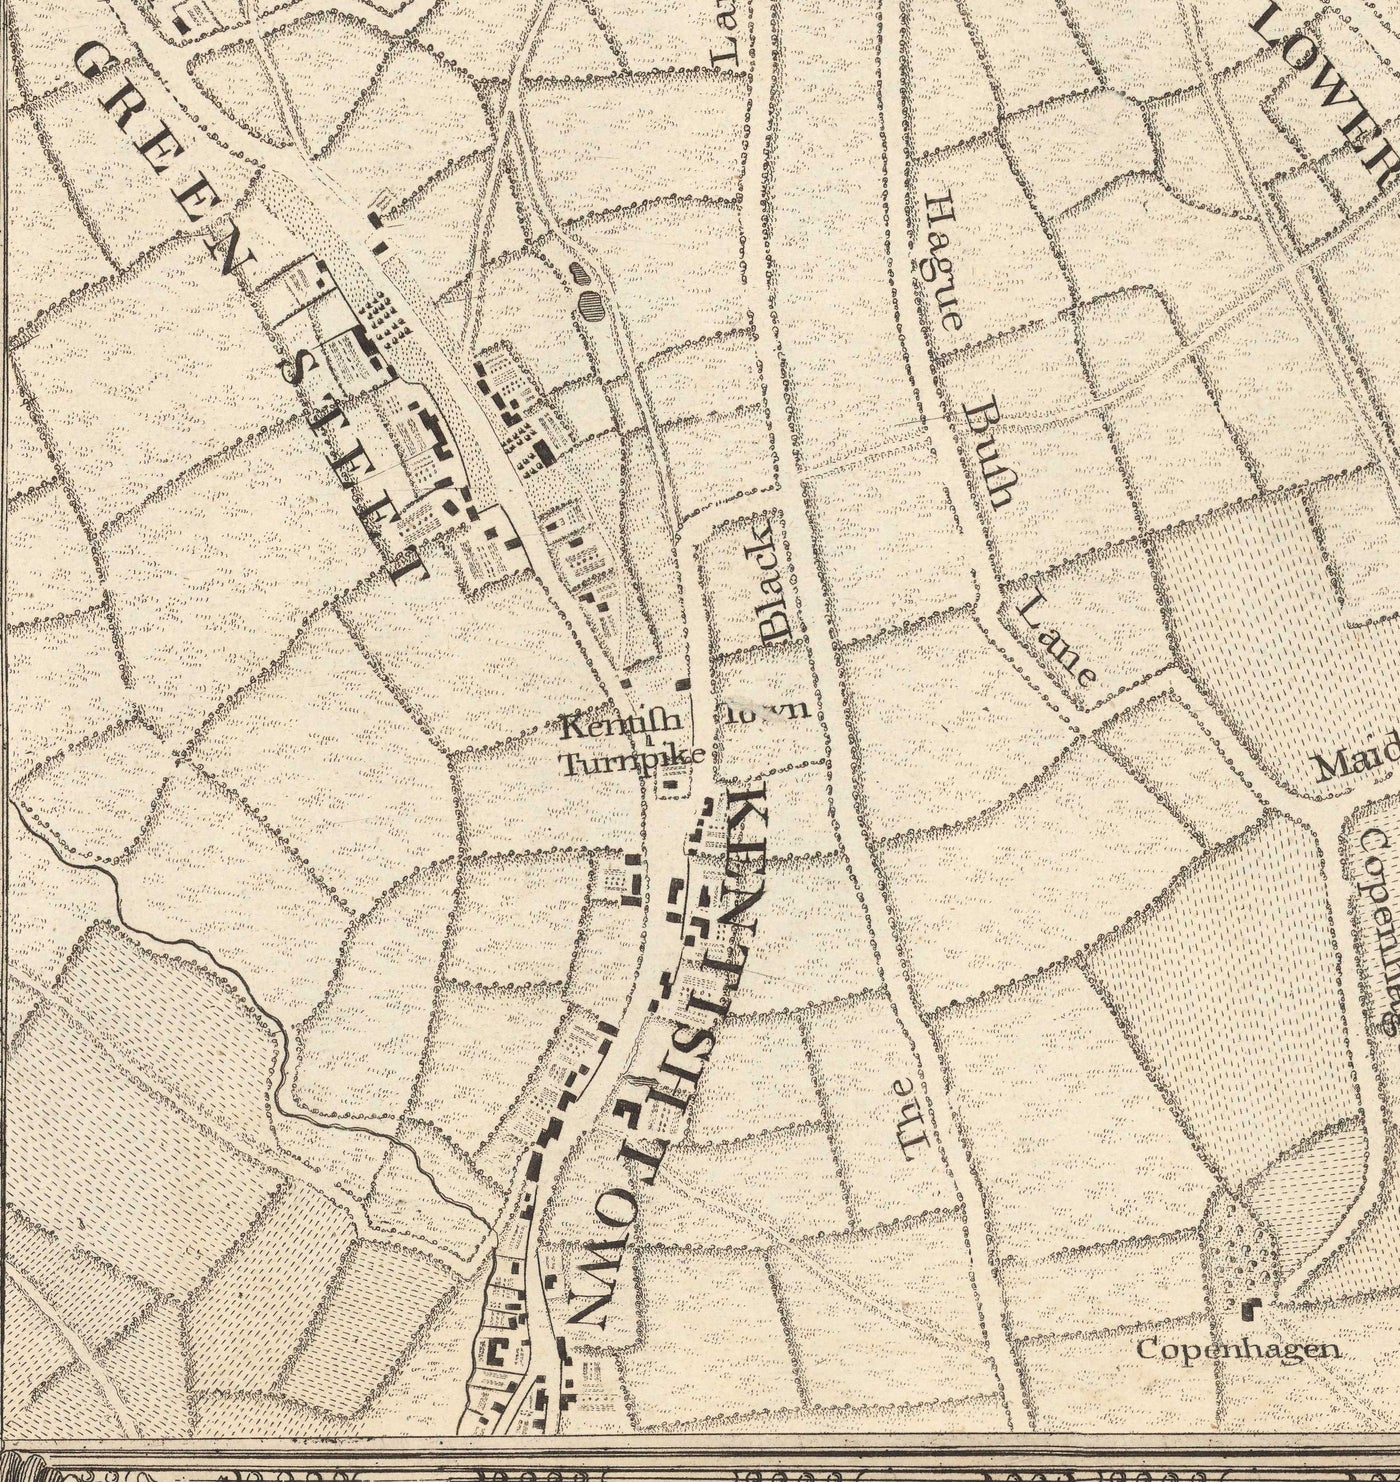 Alte Karte von Nordlondon im Jahr 1746 von John Rocque - Highgate, Clapton, Stoke Newington, Tottenham, NW5, NW1, N1, N7, N5, N16, N4, N9, N6, E5, E8, E9